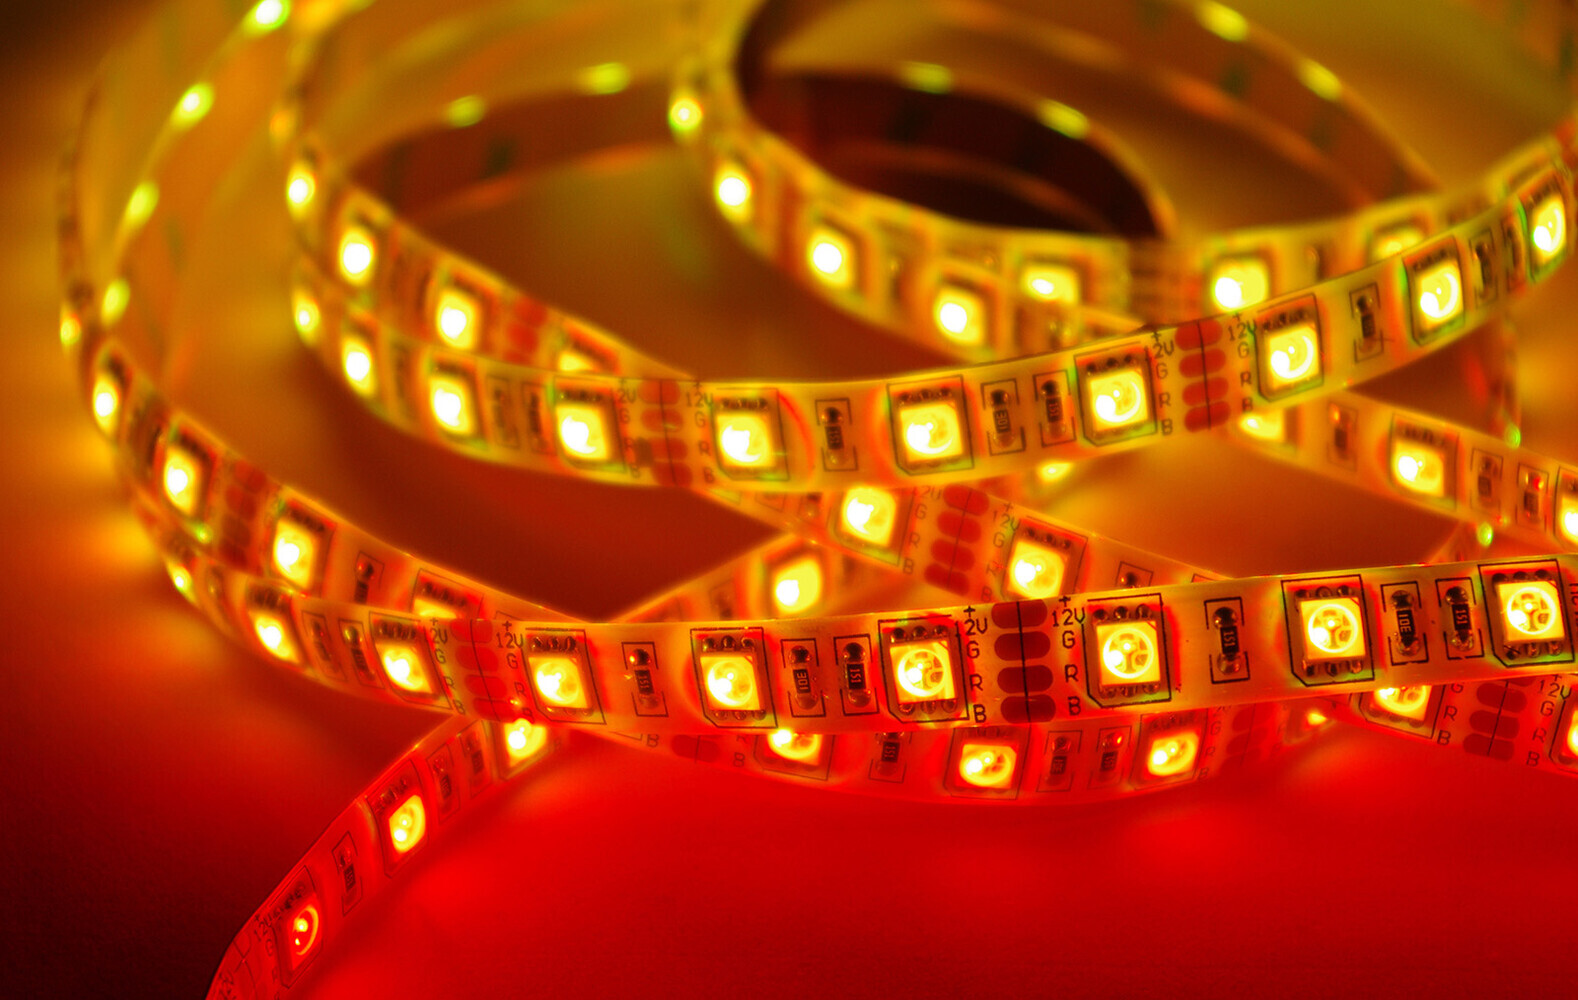 Hochwertiger Comfort LED-Streifen in bunten RGB-Farben, wasserdicht nach IP65, leuchtet mit 60 LEDs pro Meter, inklusive praktischer Fernbedienung und Netzteil - ein Qualitätsprodukt von LED Universum